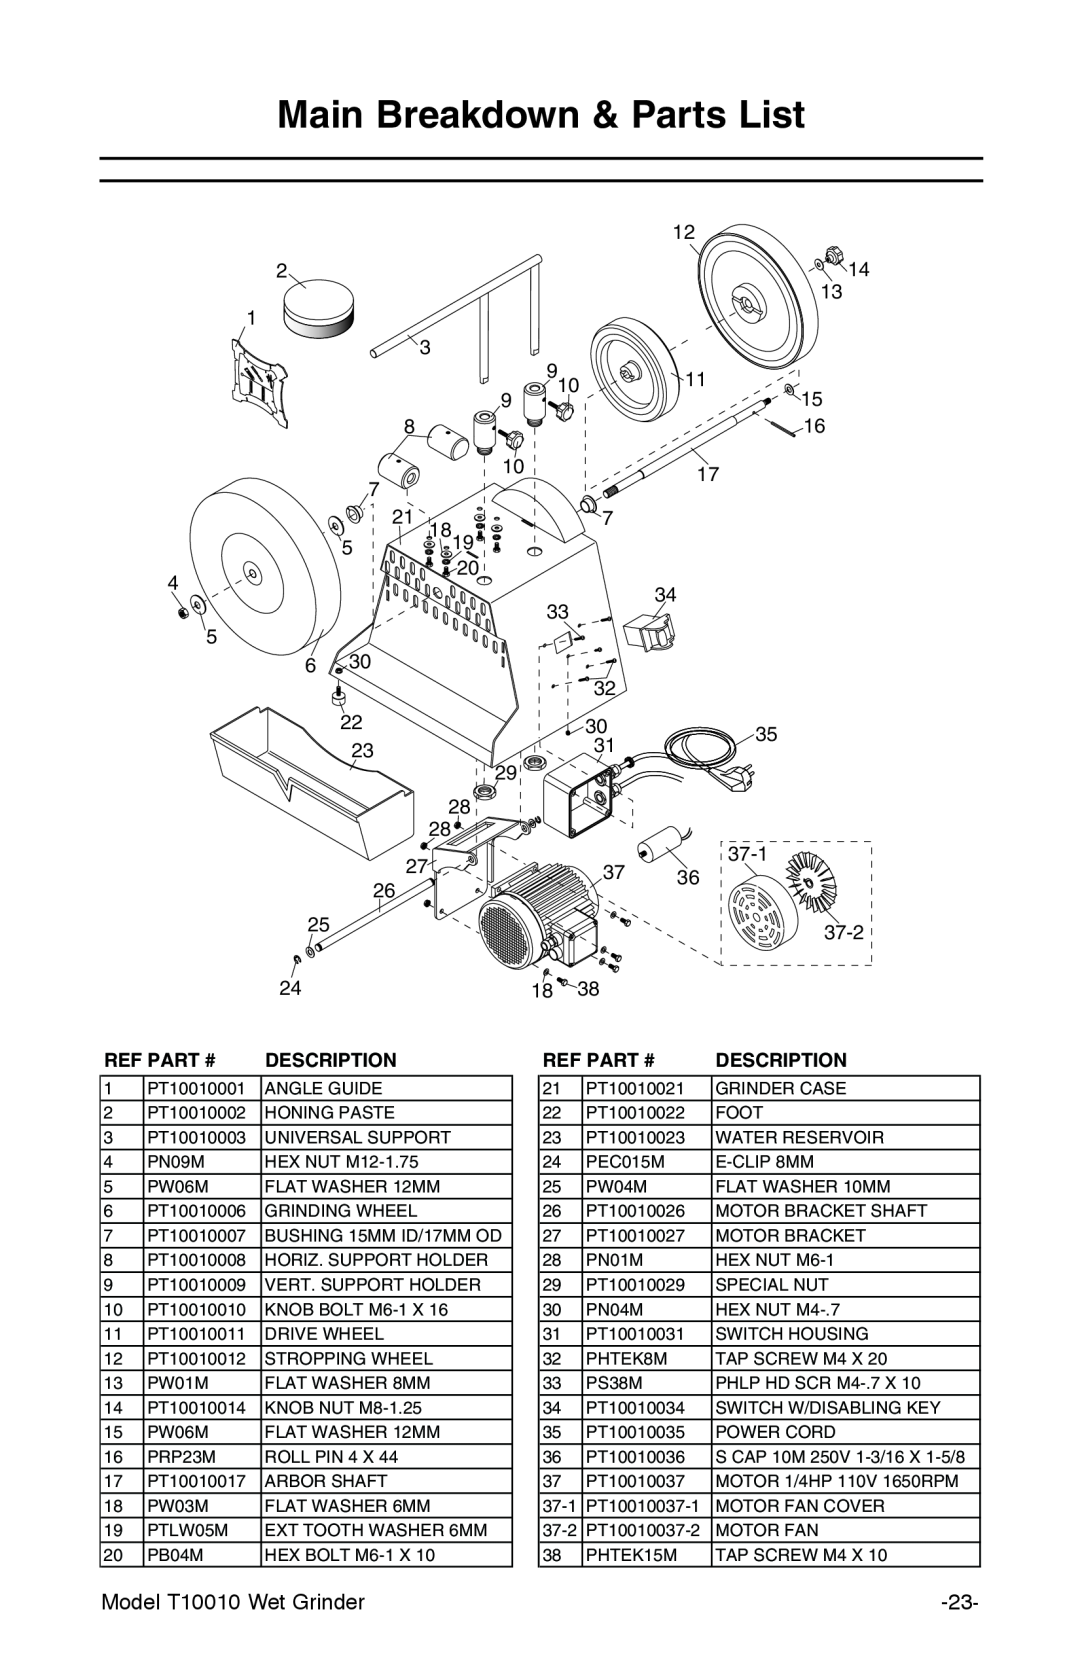 Grizzly T10010 manual Main Breakdown & Parts List, Ref Part #, Description 